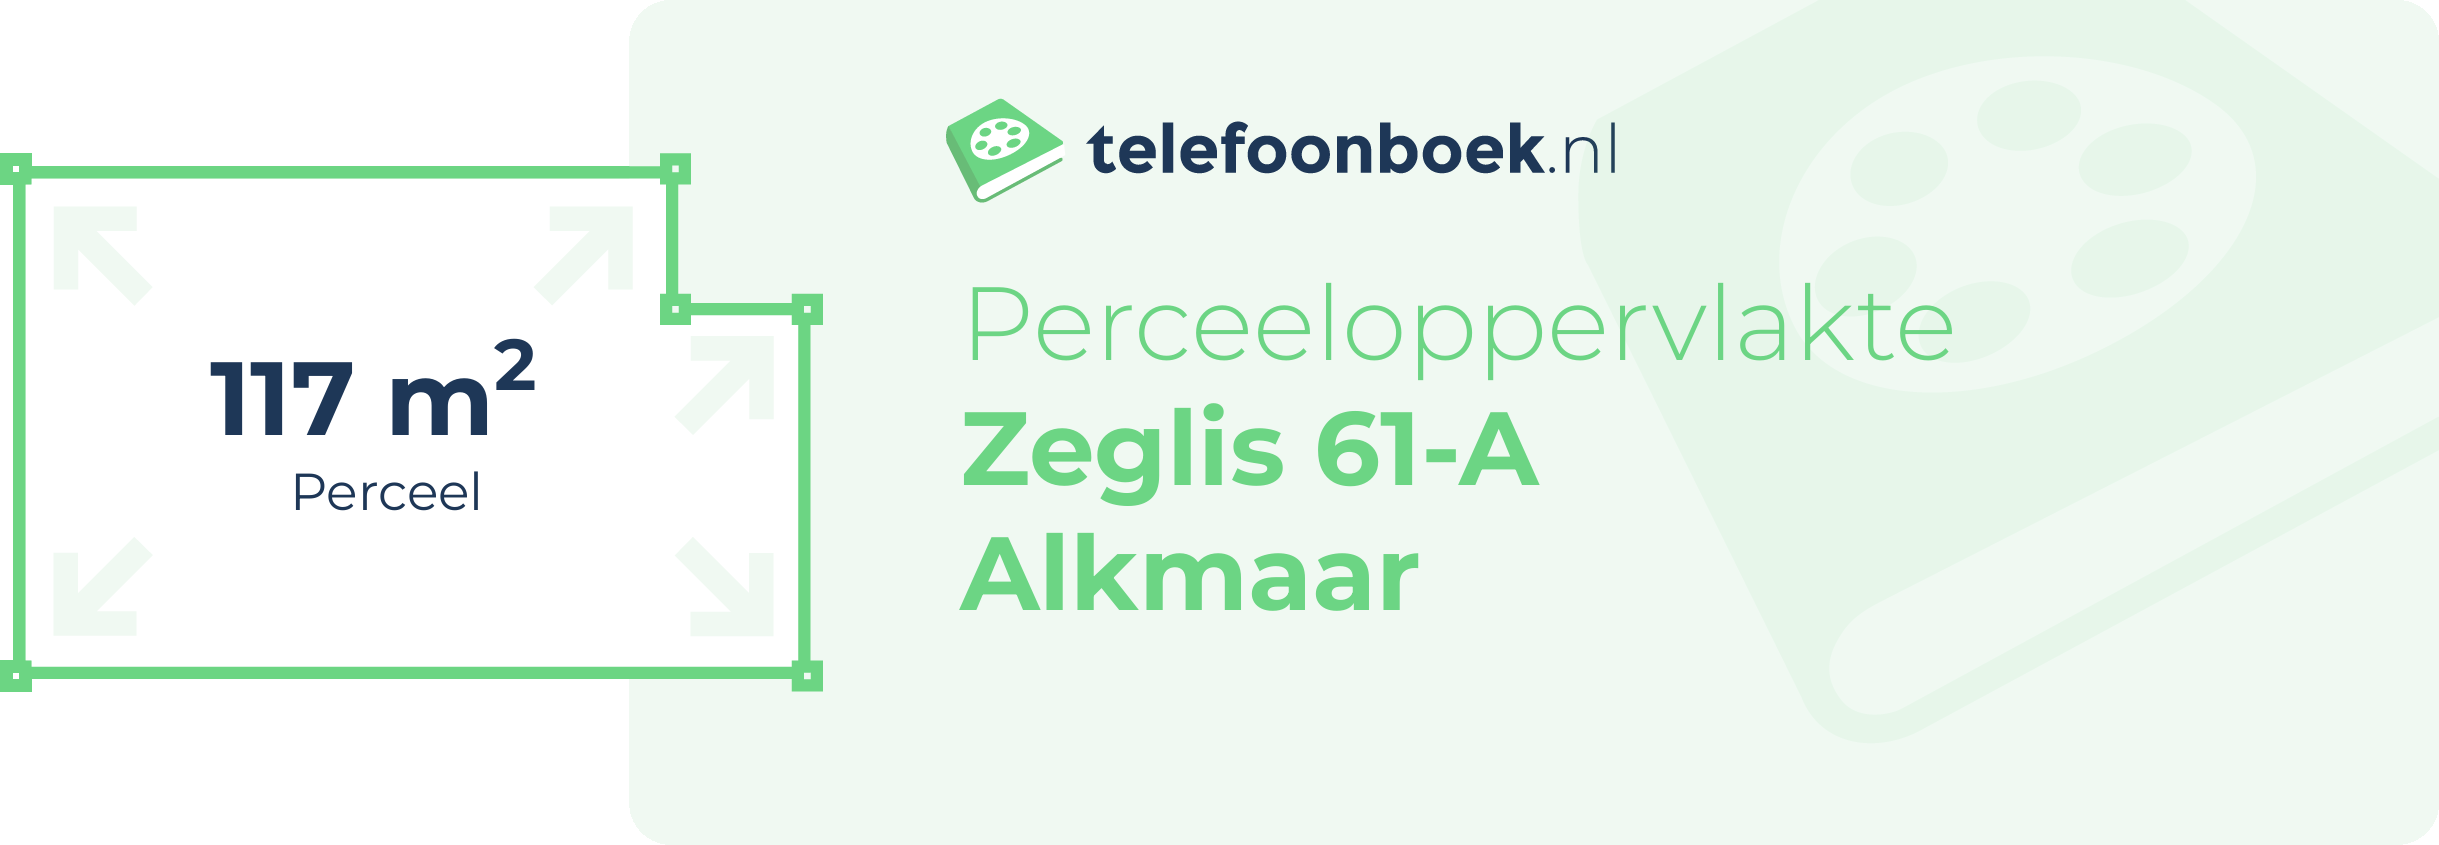 Perceeloppervlakte Zeglis 61-A Alkmaar